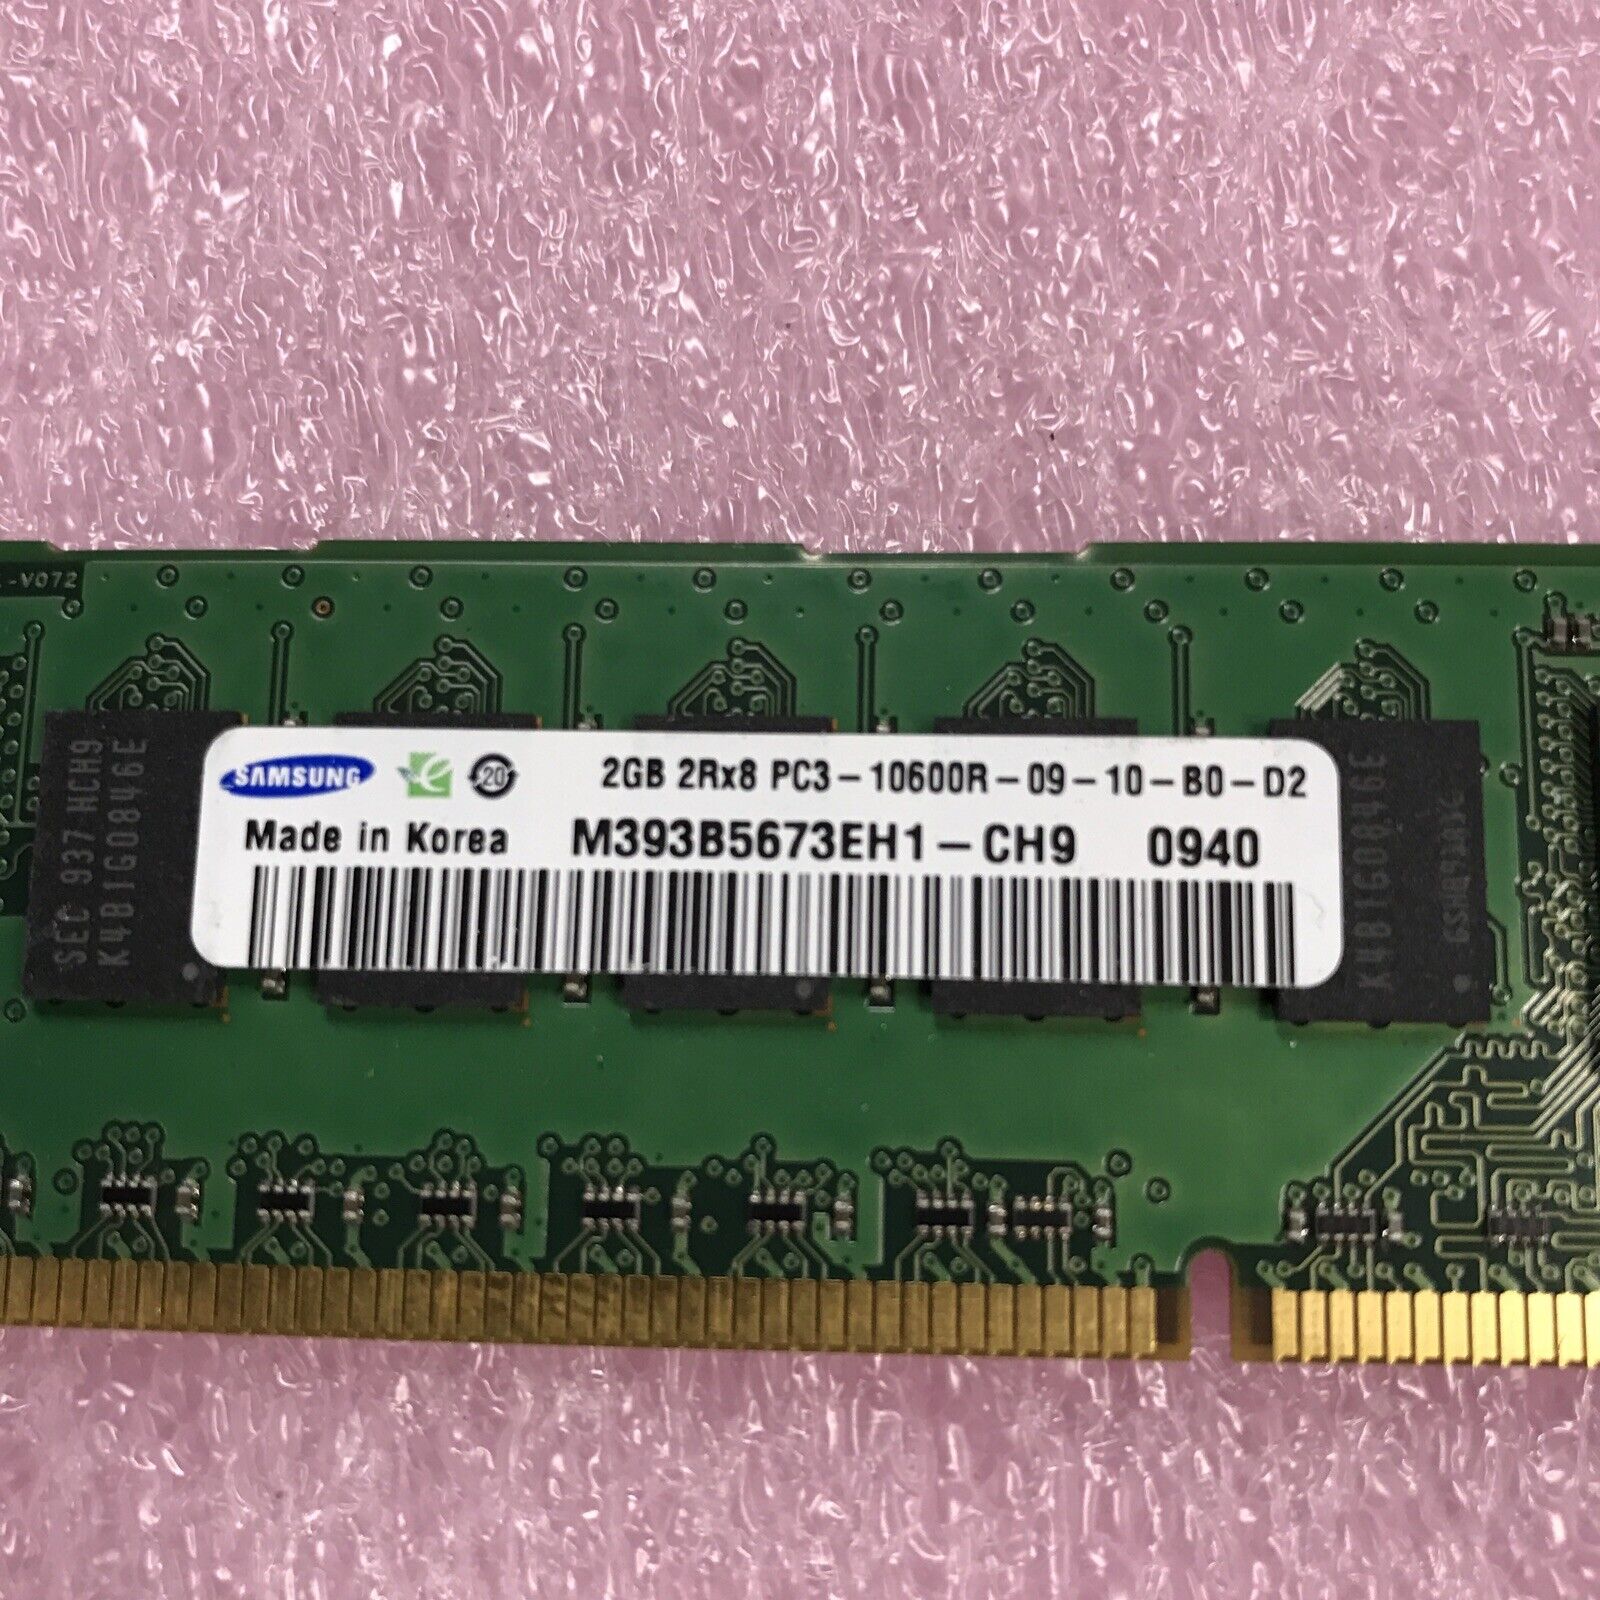 Samsung 4GB Kit 2x4GB 2Rx8 PC3-10600R-09-10-B0-D2 Server Ram M393B5673EH1